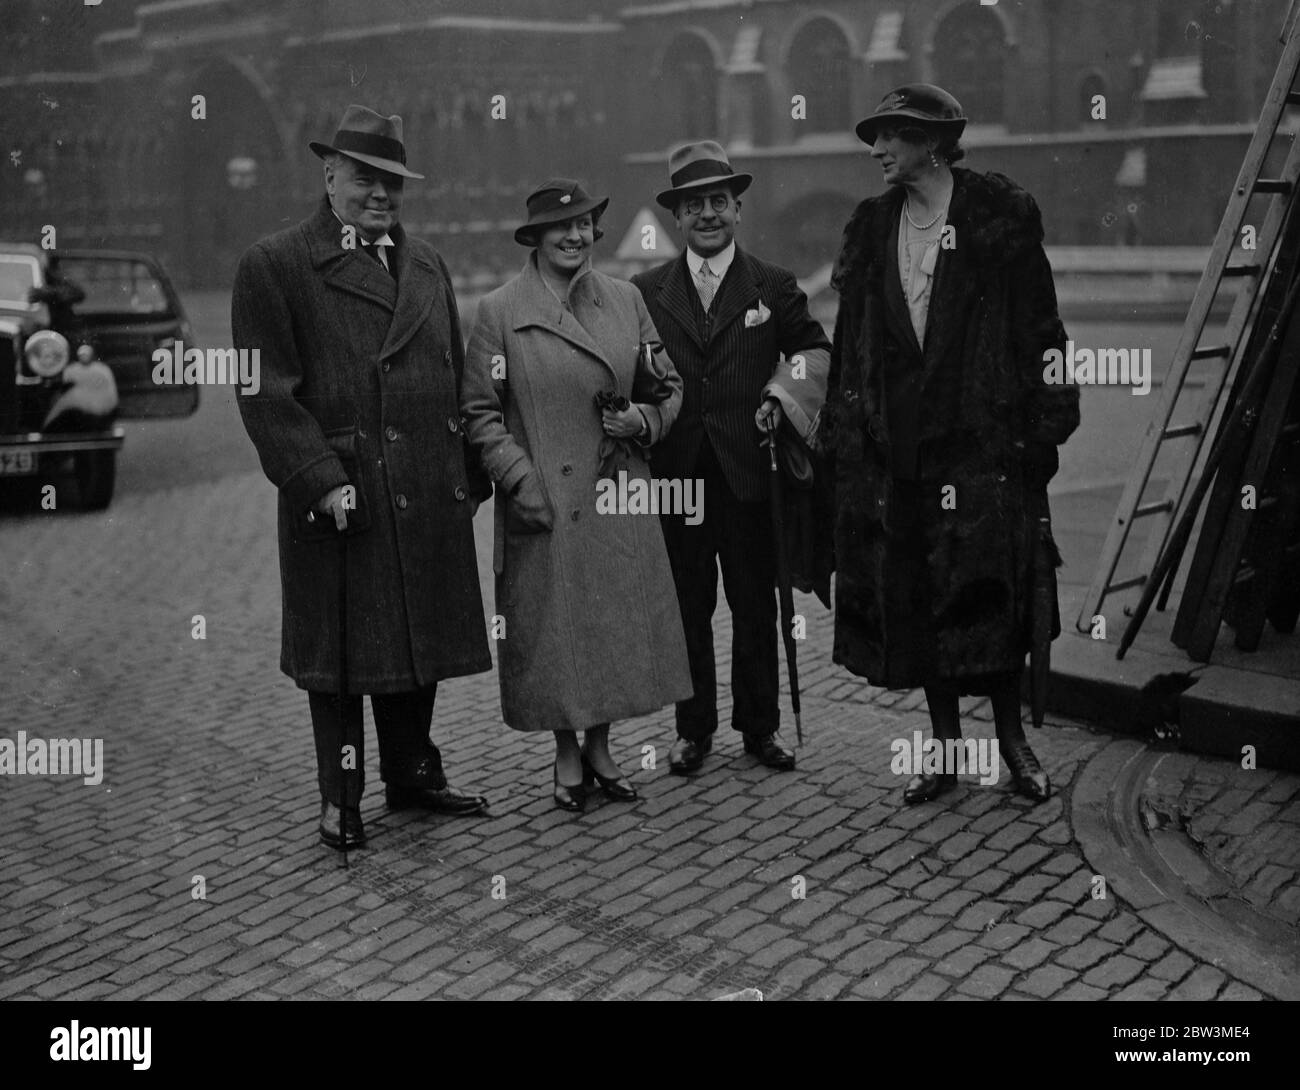 MPS arriva presto per l'ultima sessione del Parlamento. I sigg. J. P Hannan, McKeas e Shaw, dopo aver prenotato i loro posti, lasciano il posto. 22 ottobre 1935 Foto Stock